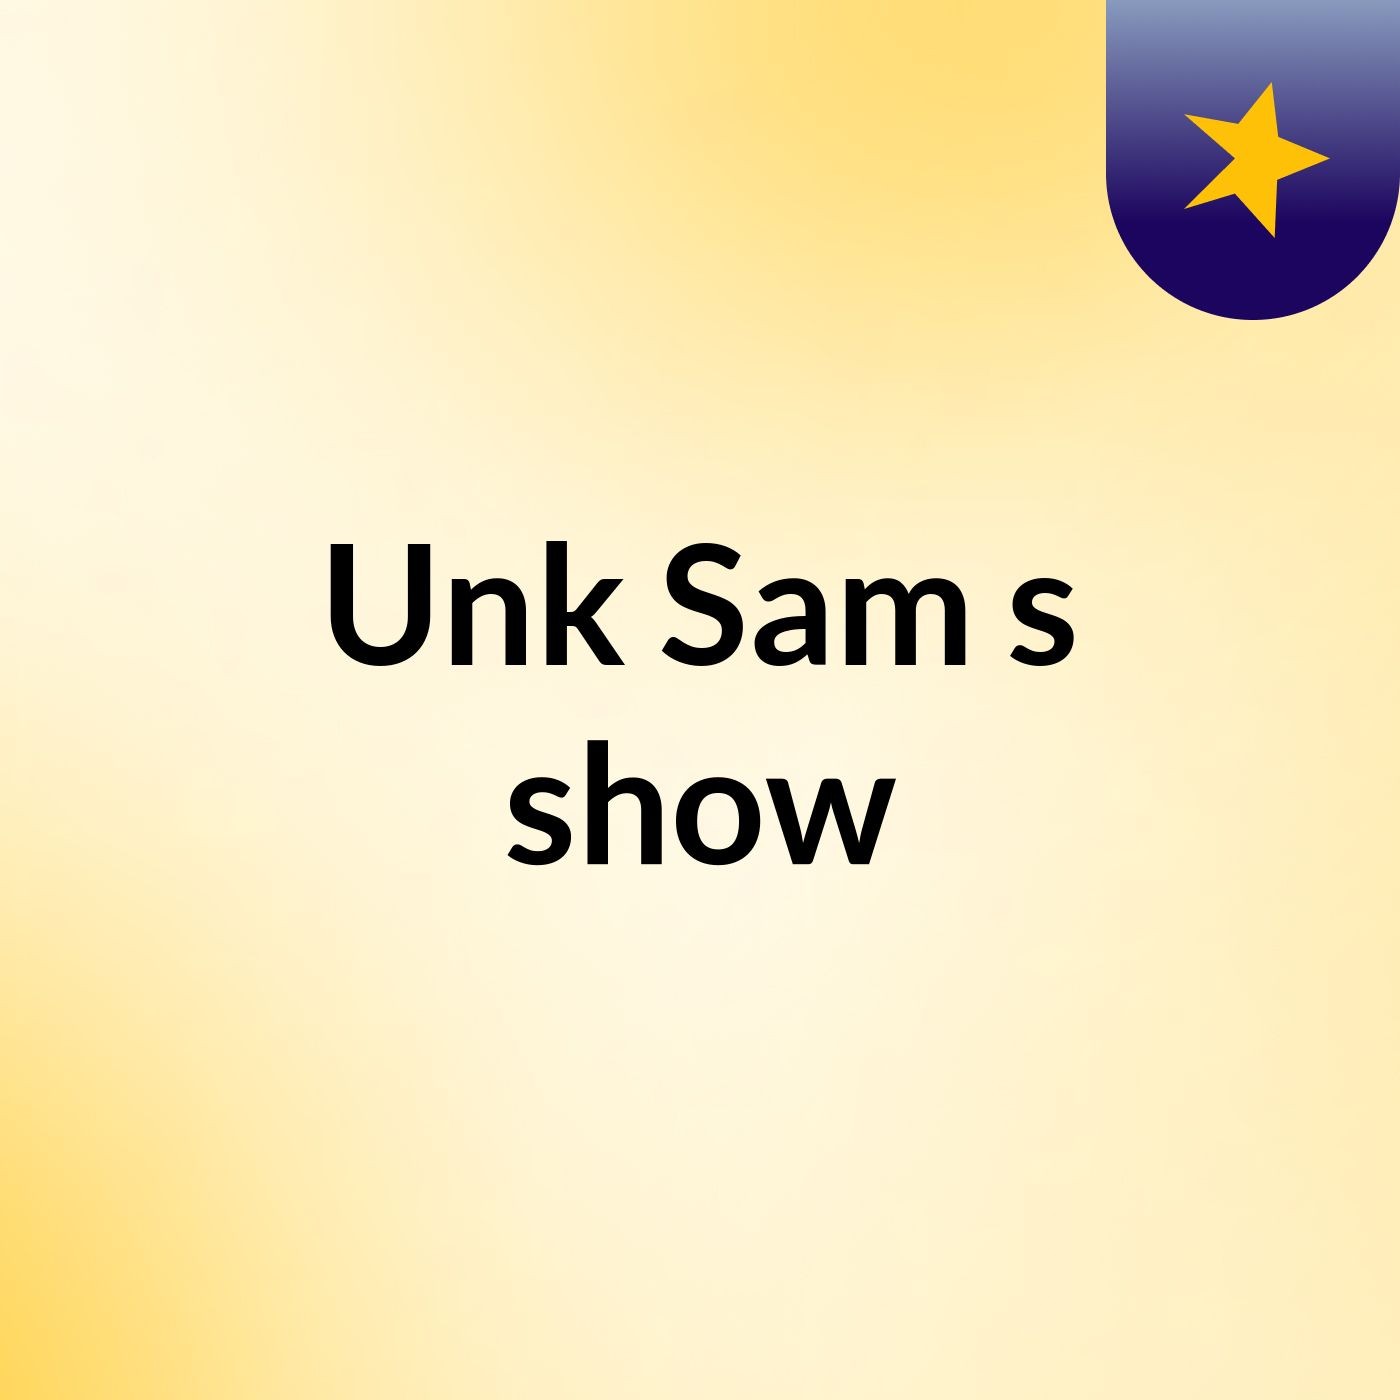 Unk Sam's show